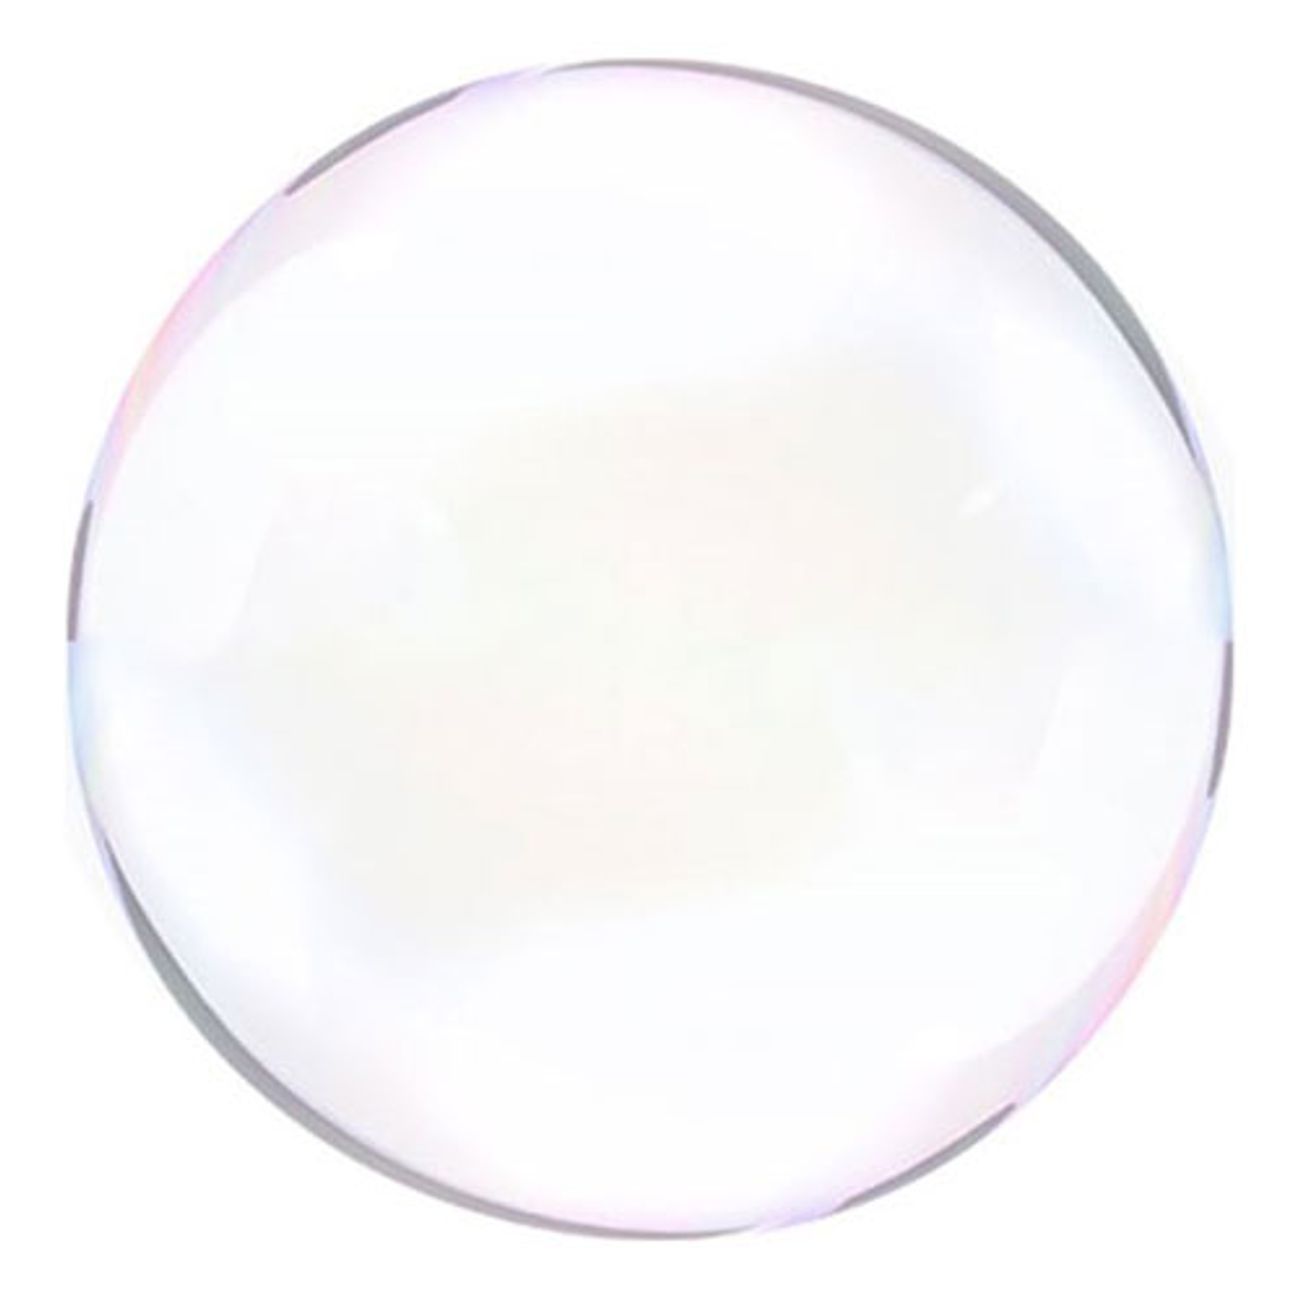 bubbelballonger-transparenta-1